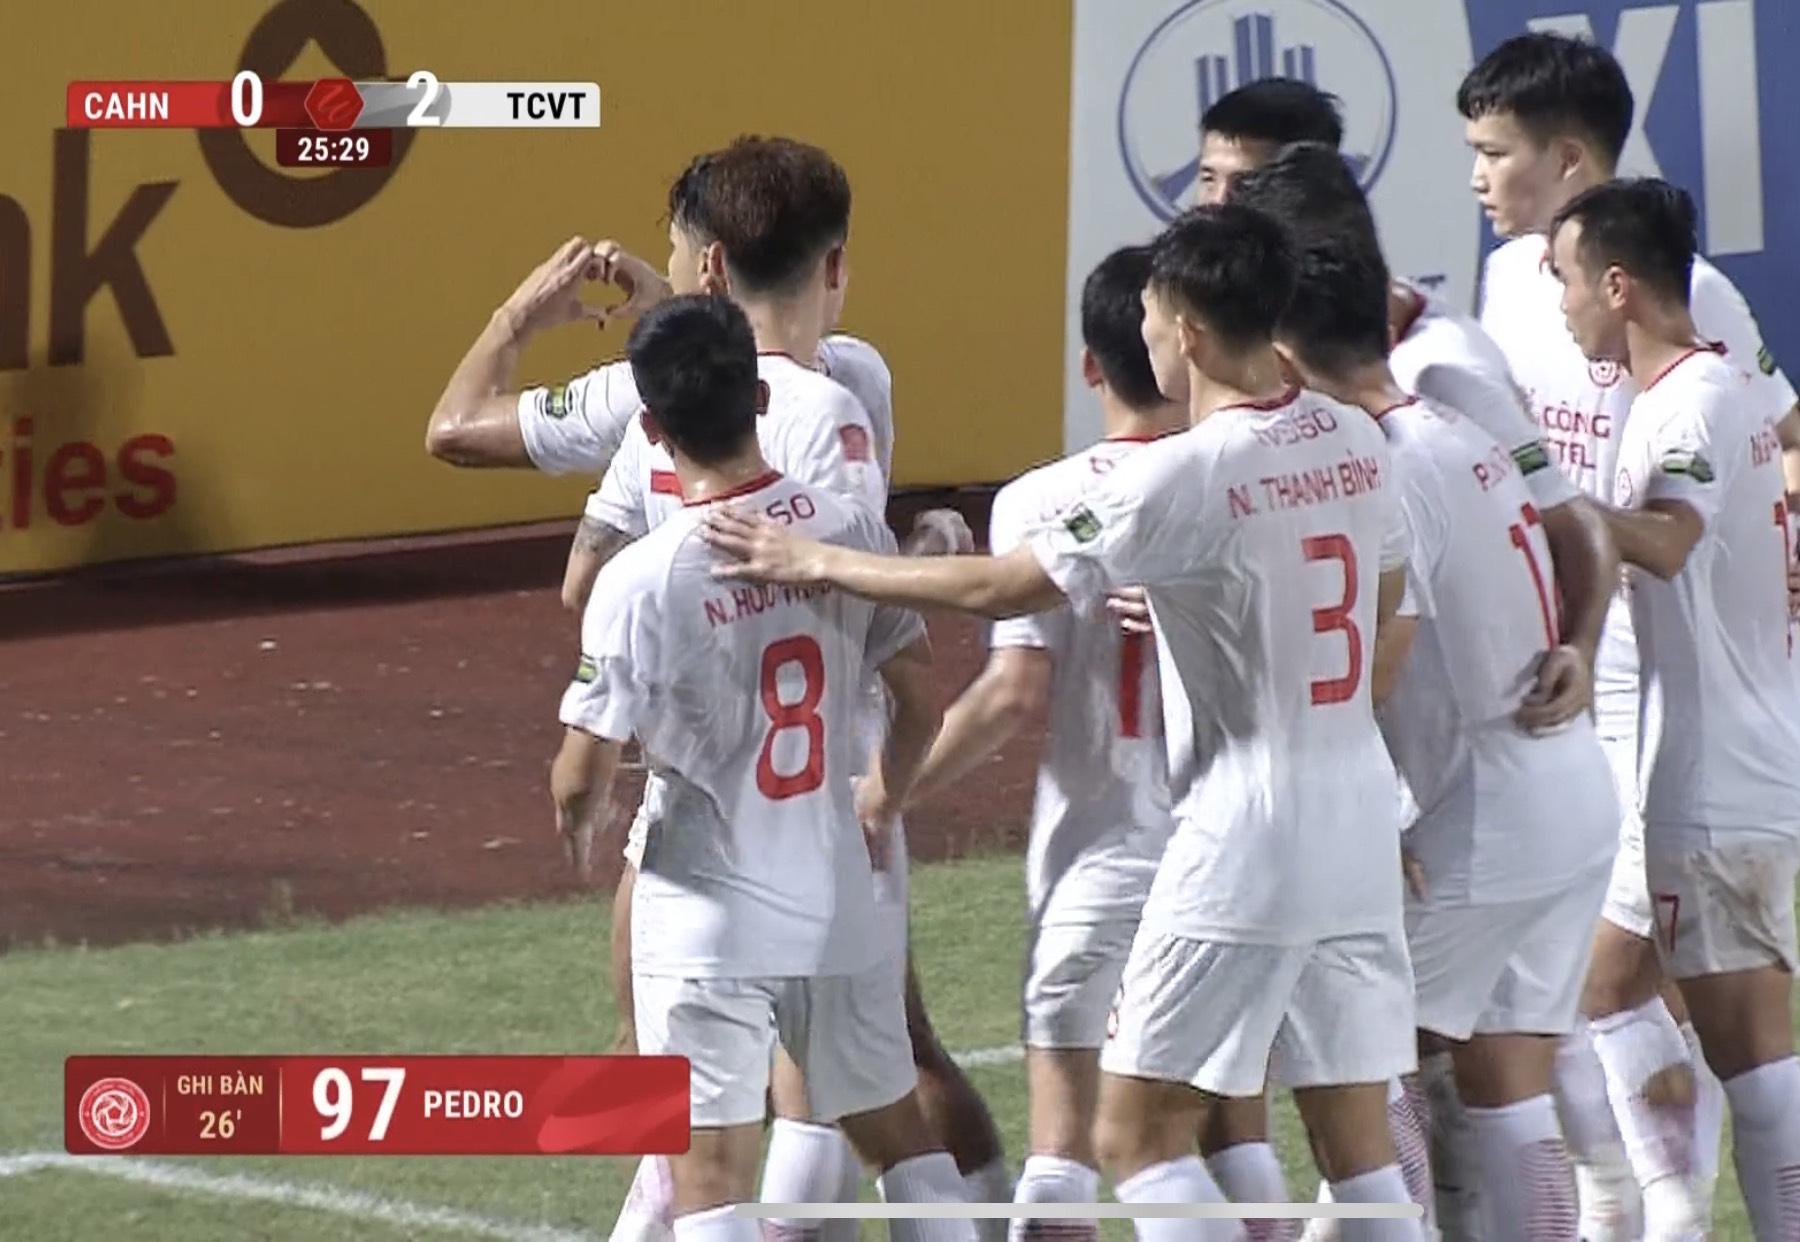 Trực tiếp CAHN 0-2 Viettel: Filip Nguyễn nhận bàn thua 469666